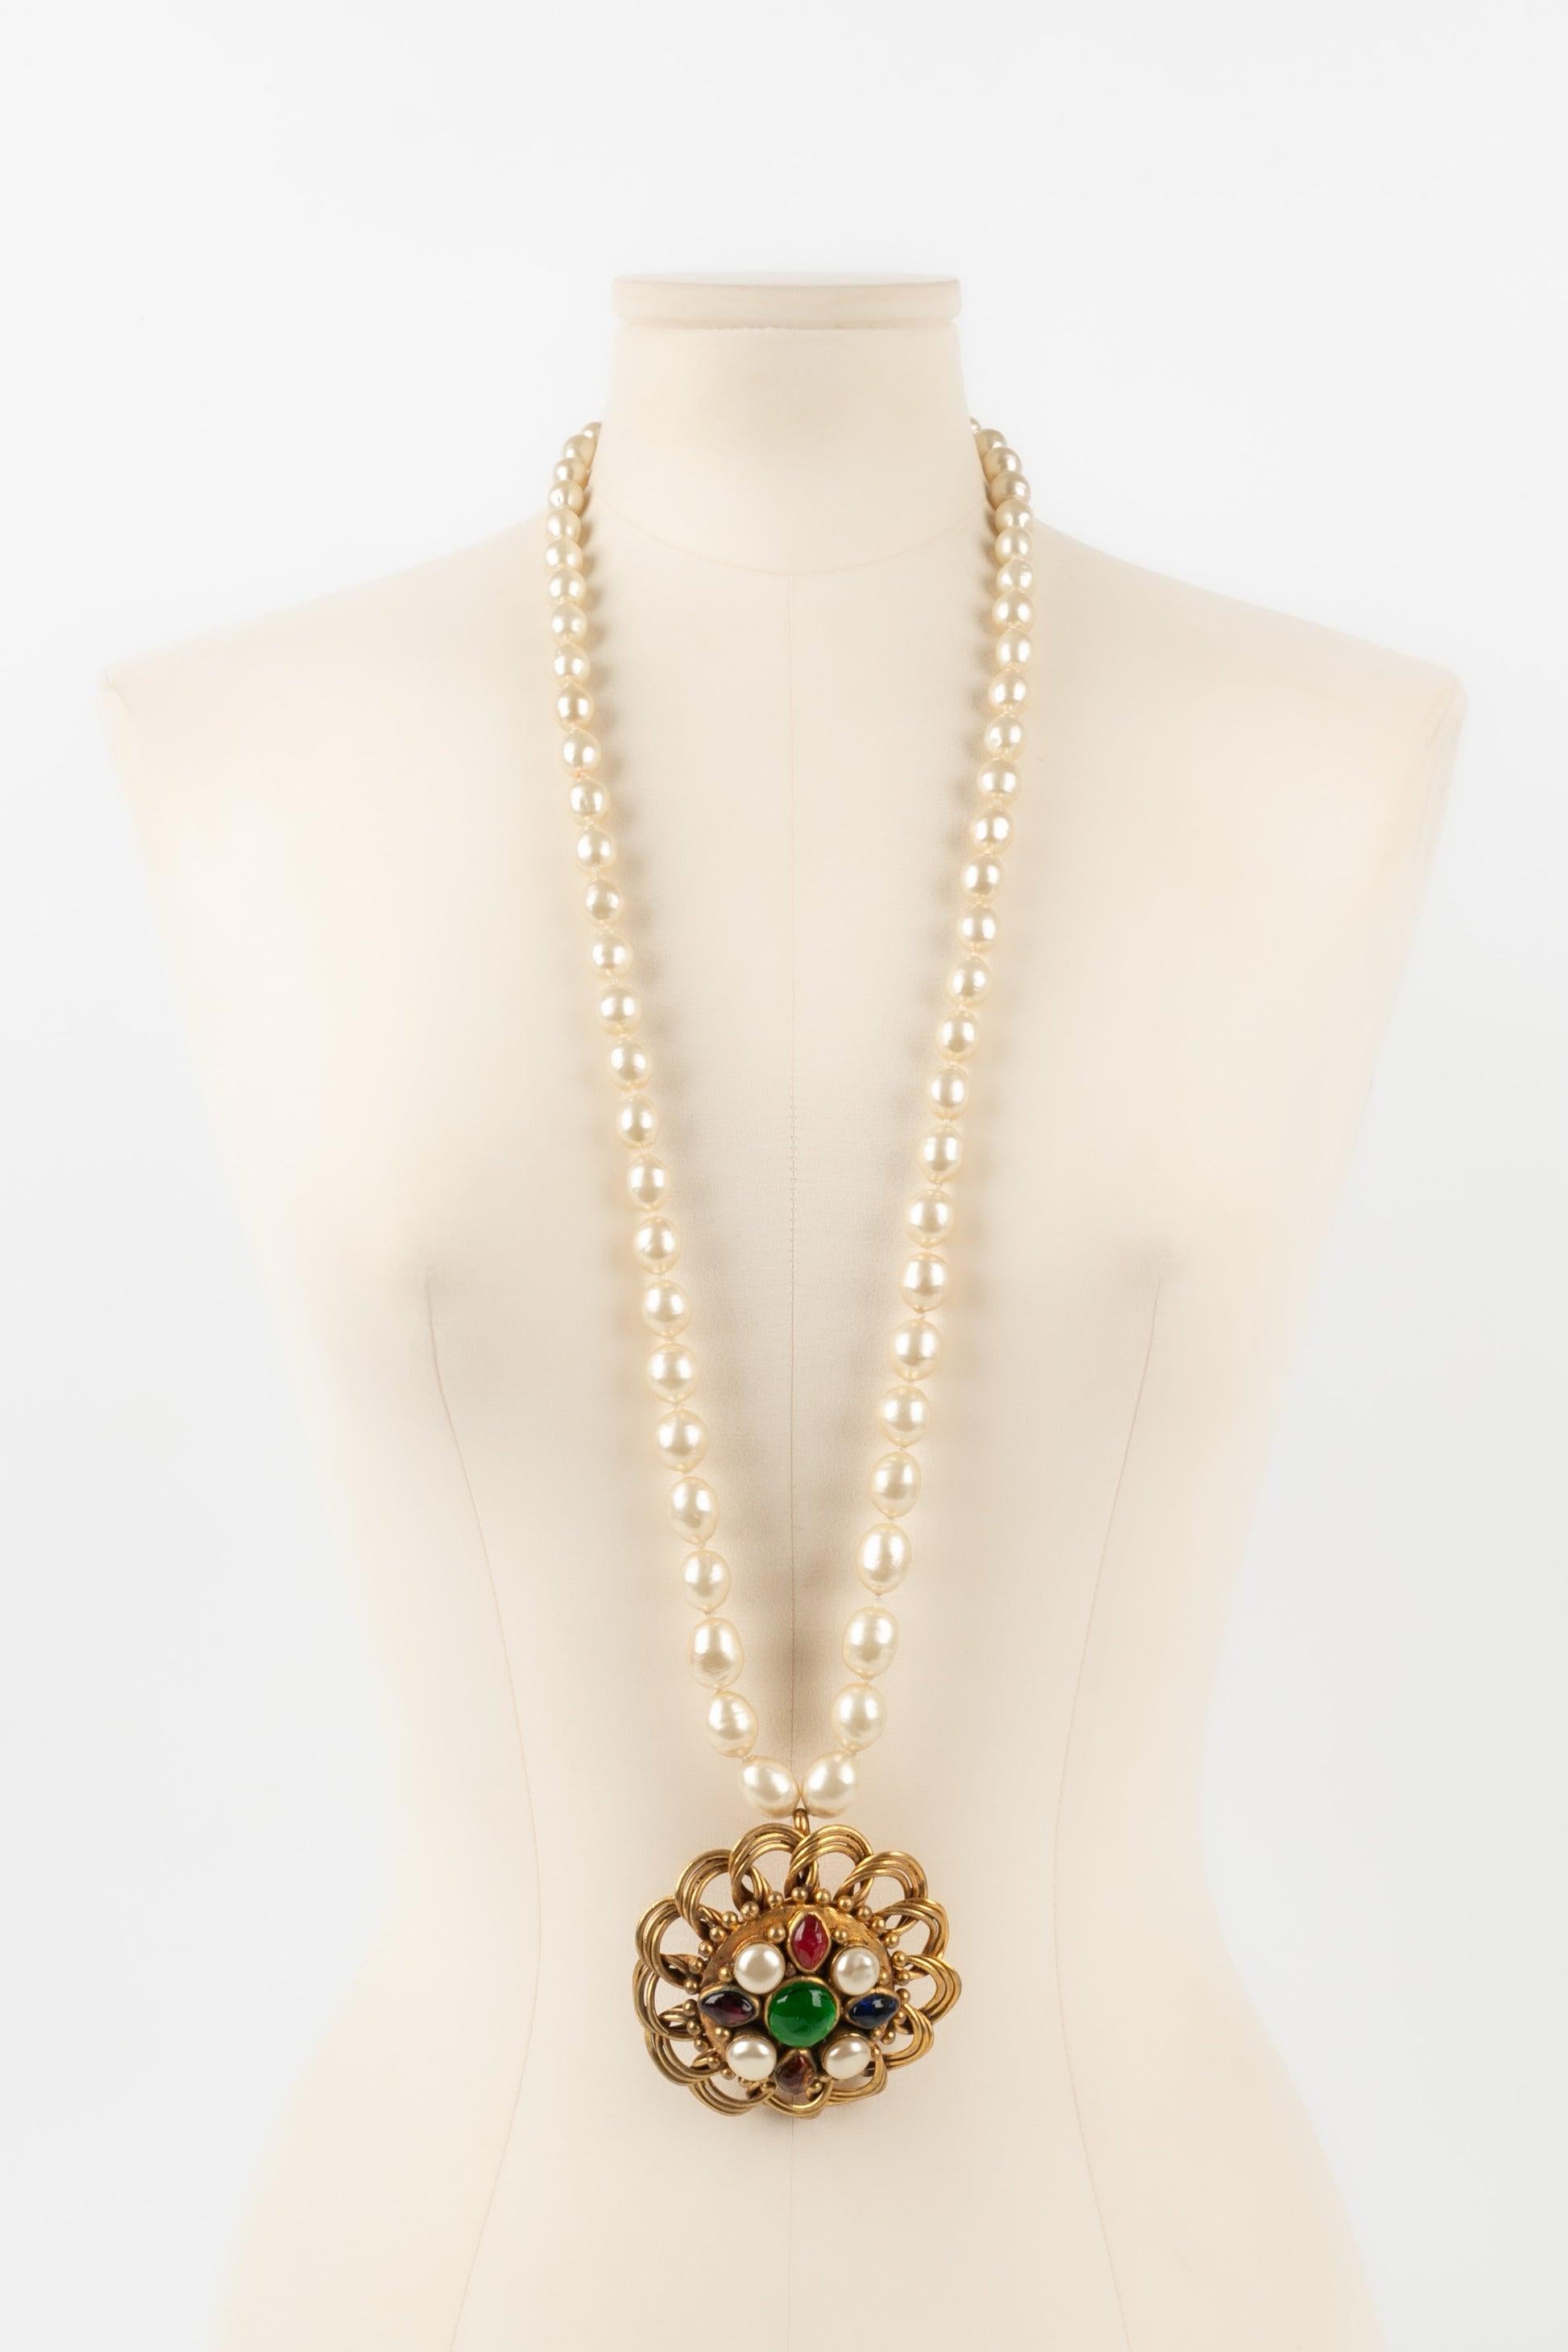 Chanel - (Made in France) Collier de perles fantaisie avec un pendentif en métal doré orné de cabochons en pâte de verre. Collectional 1984.

Informations complémentaires :
Condit : Bon état
Dimensions : Longueur du collier : 93 cm - Diamètre du